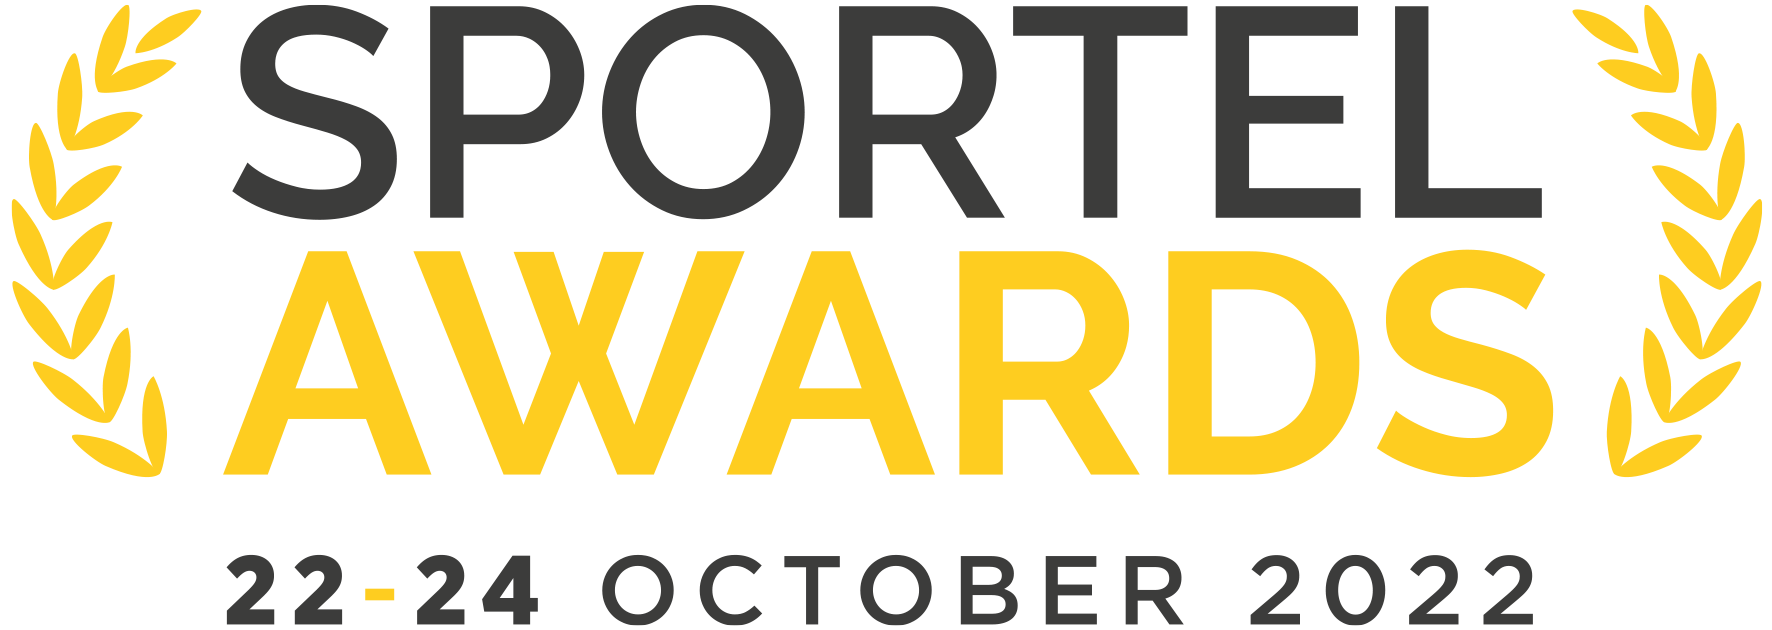 Logo SPORTEL Awards 2022 with dates